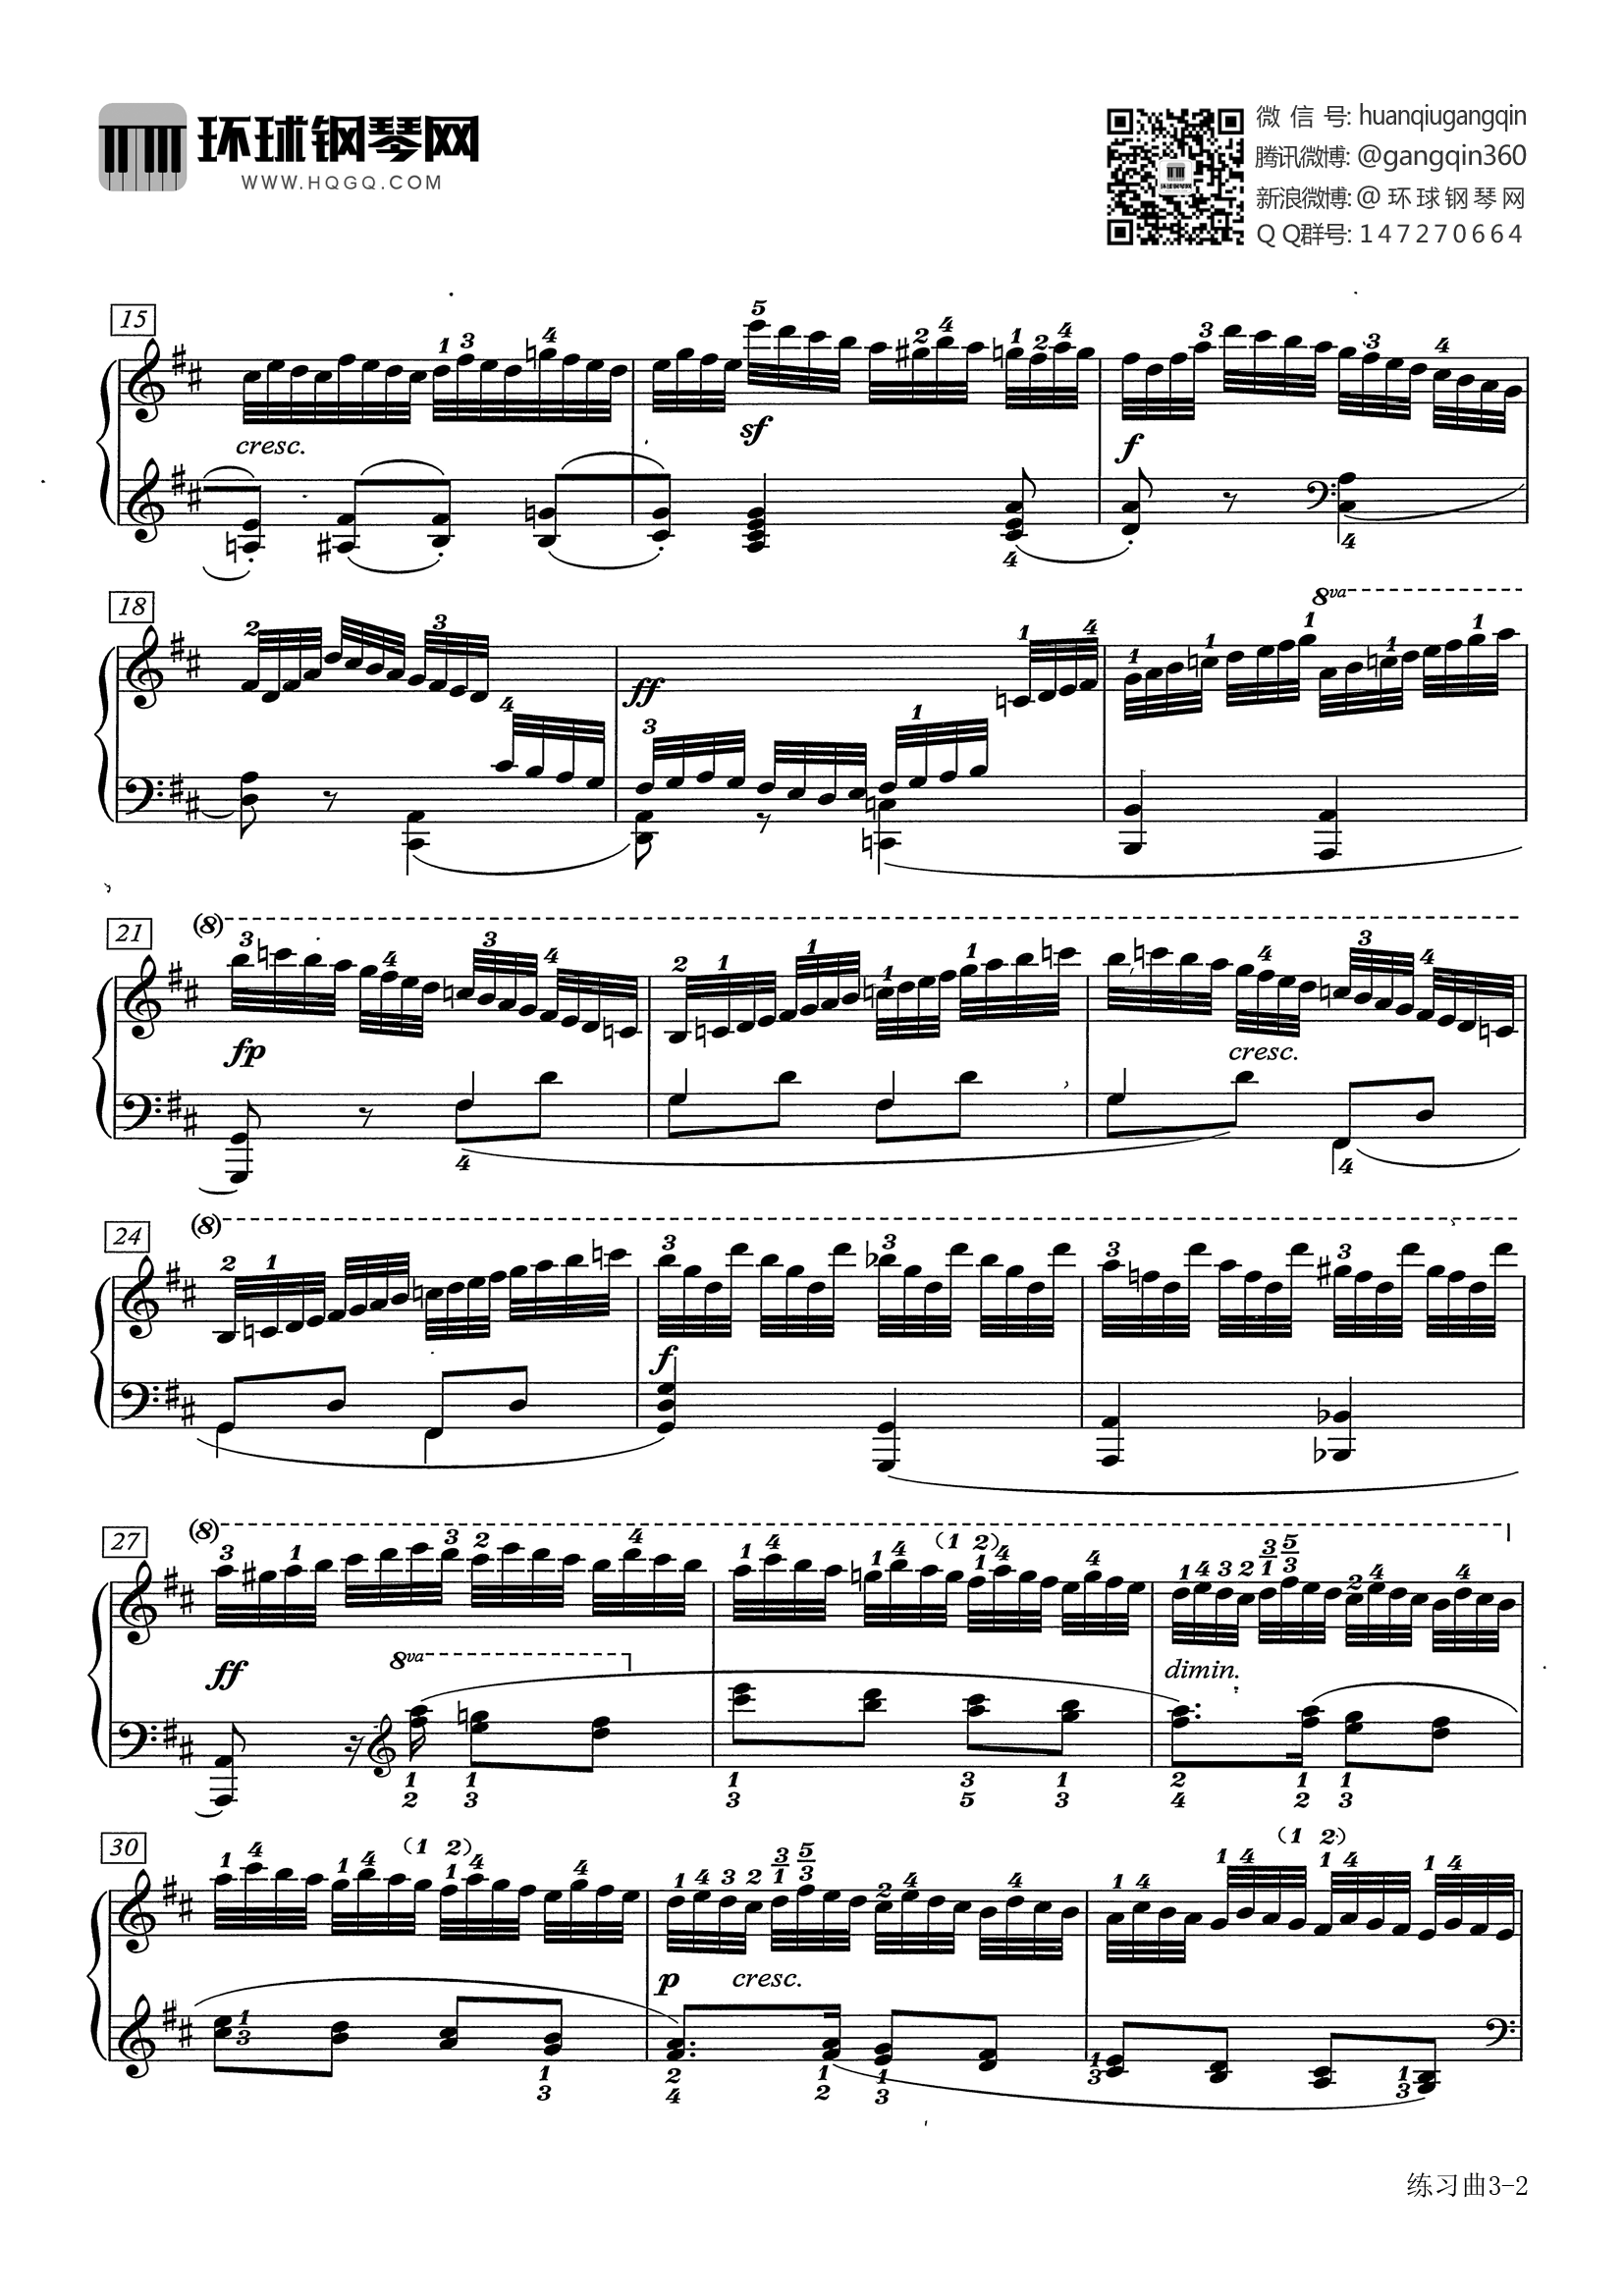 299 no.24-车尔尼 钢琴谱 环球钢琴网